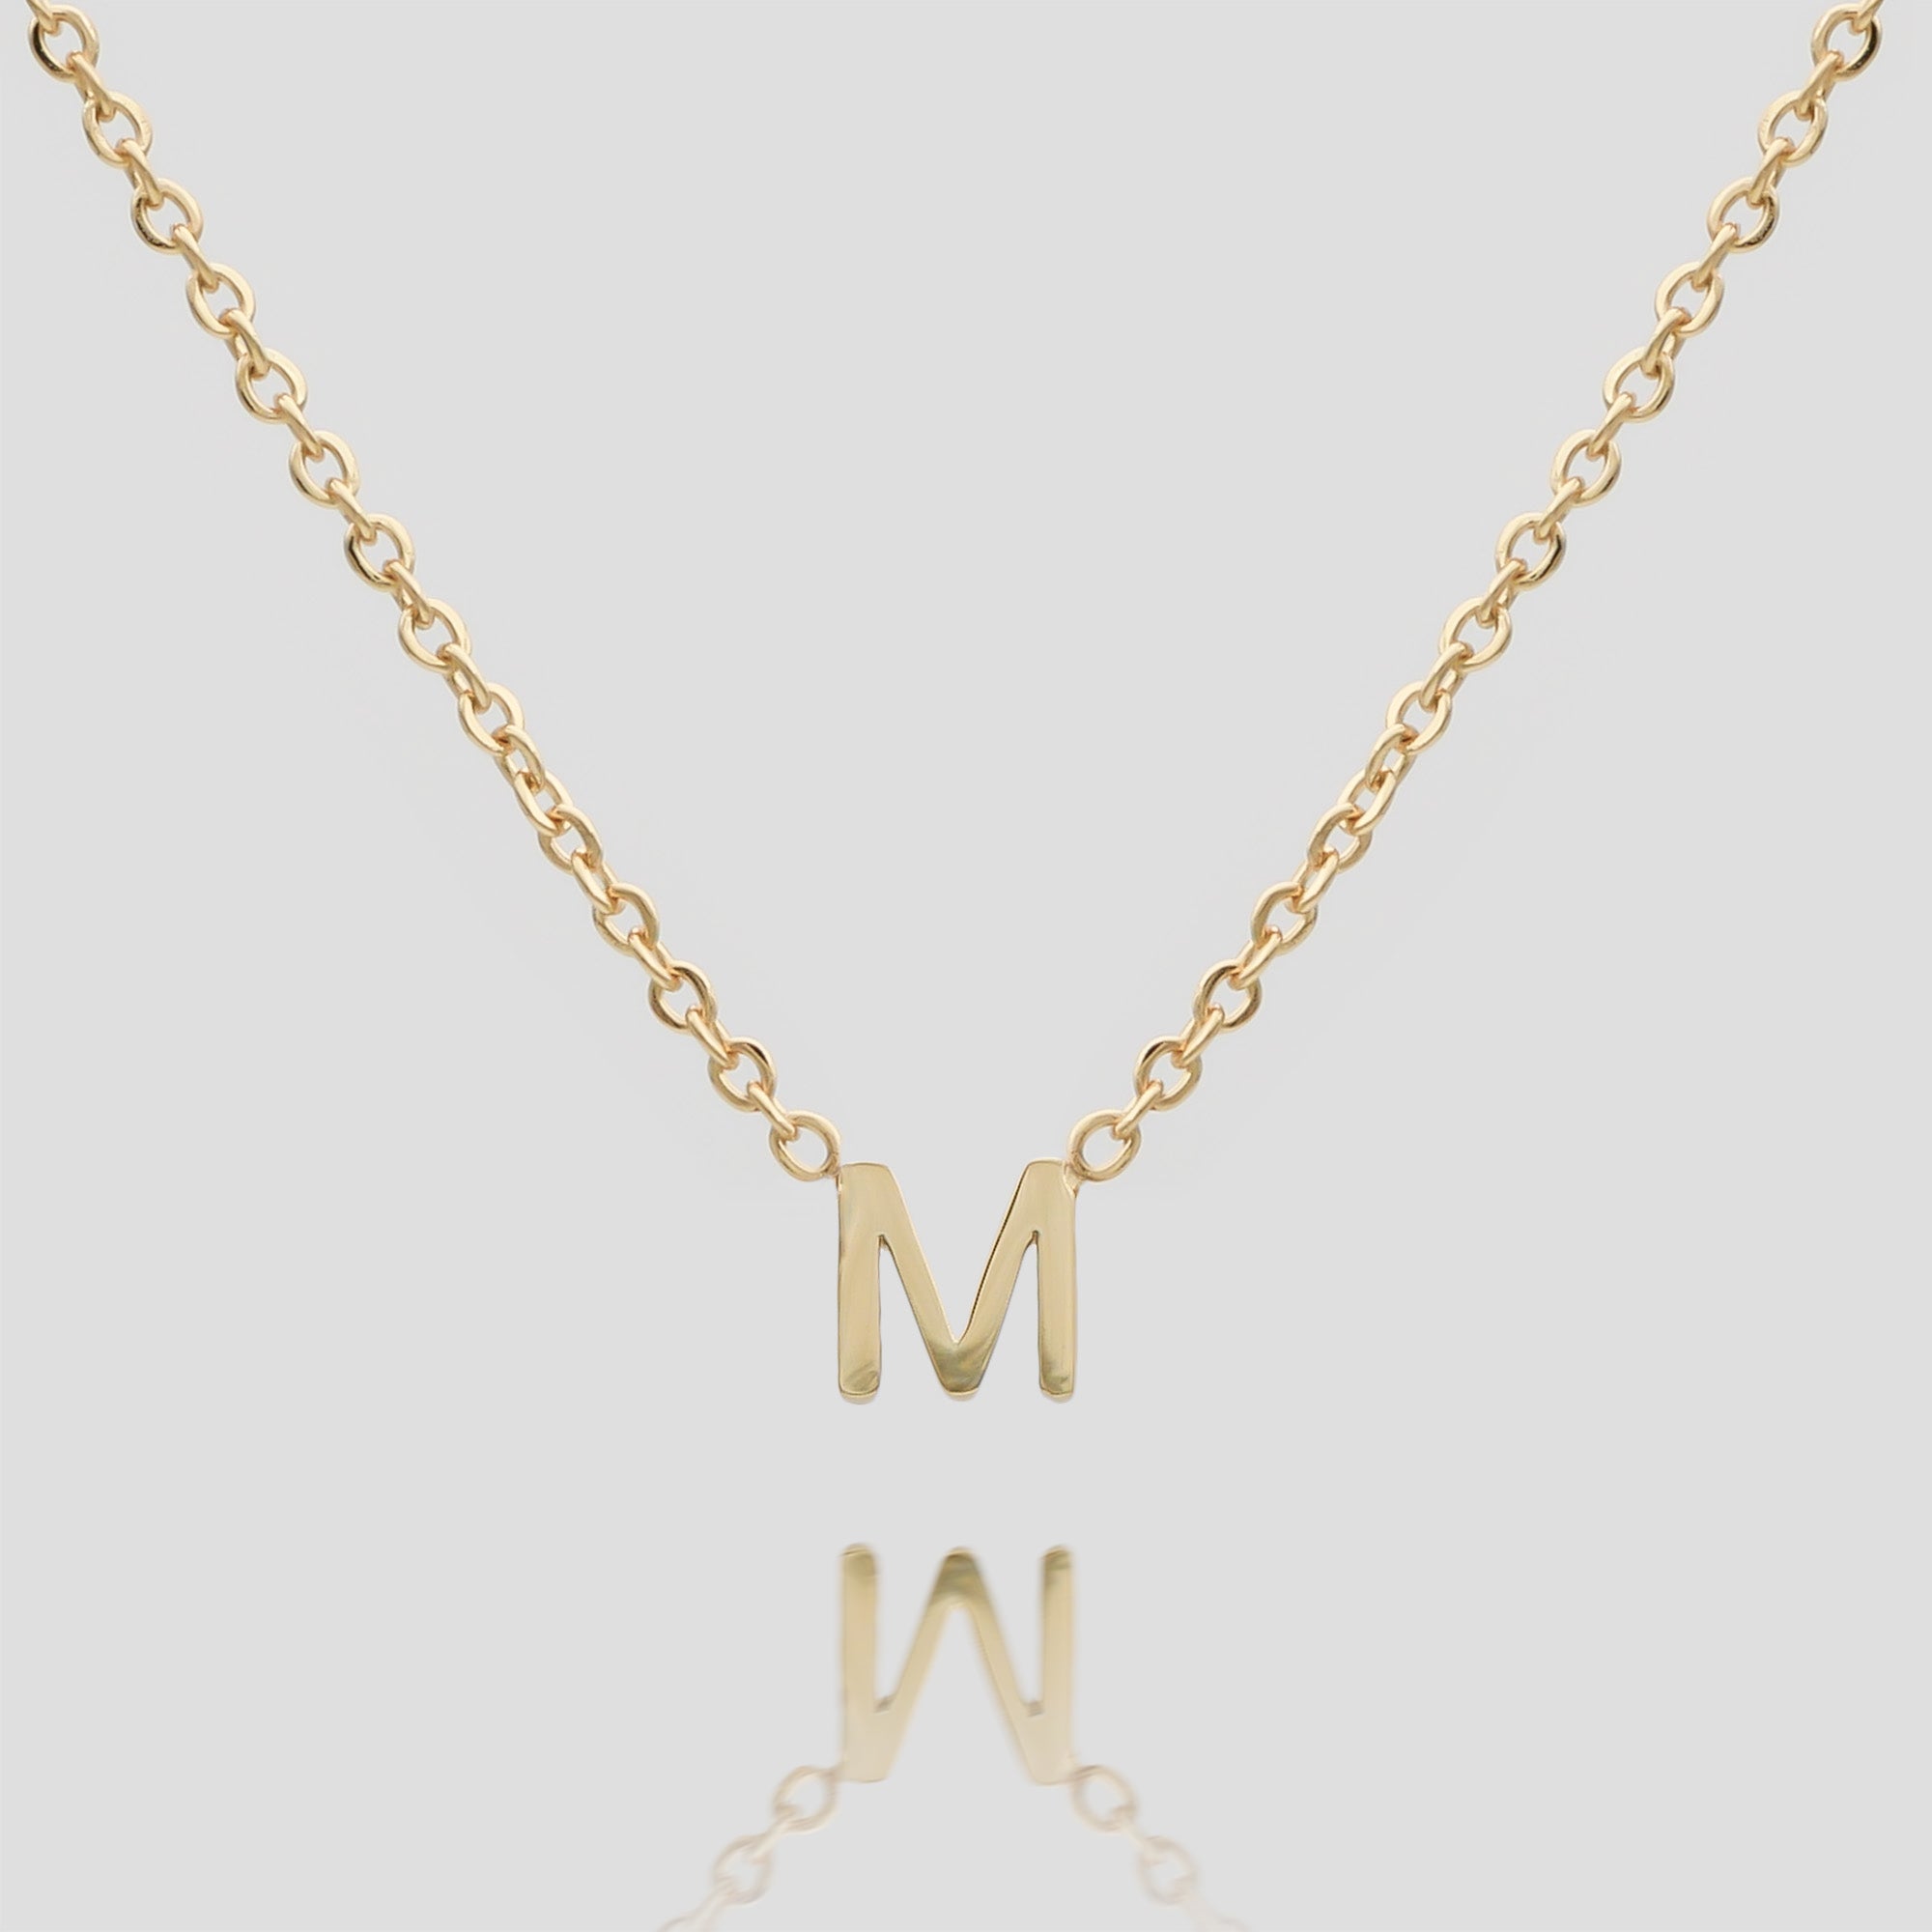 Mini collier initiale Maia